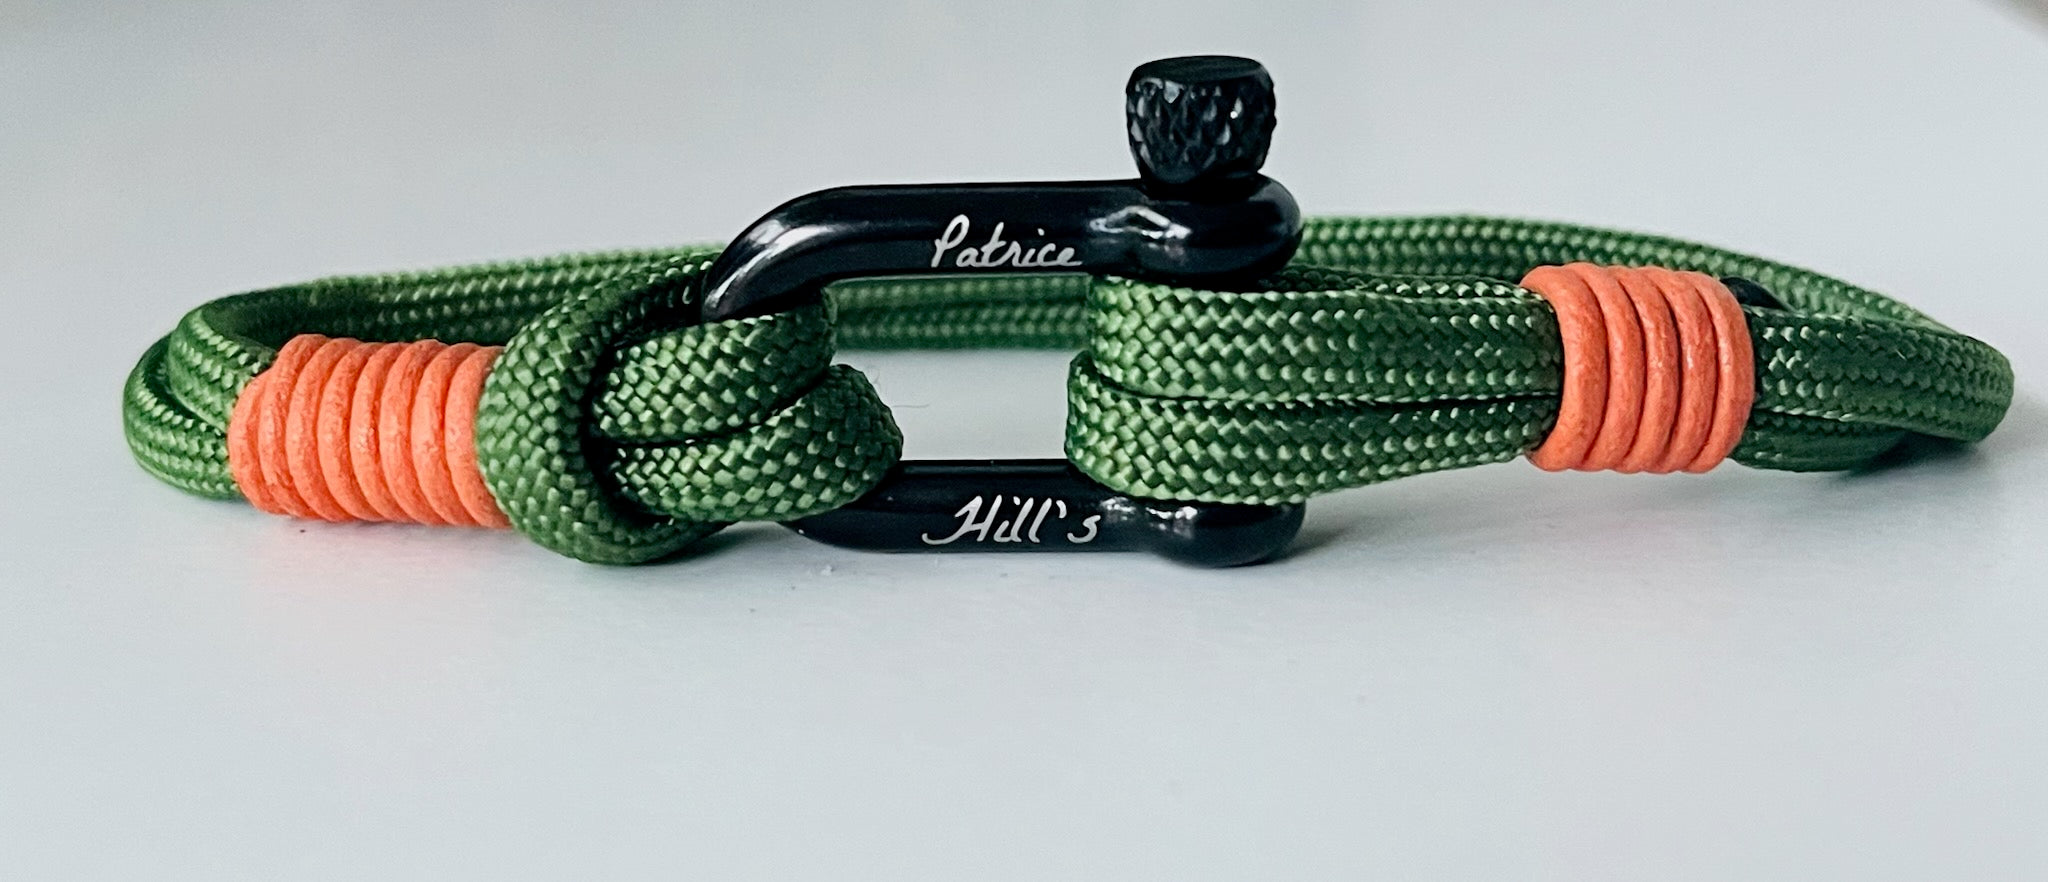 bracelet homme Patrice Hill's vert et orange fabriqué en France éco responsable